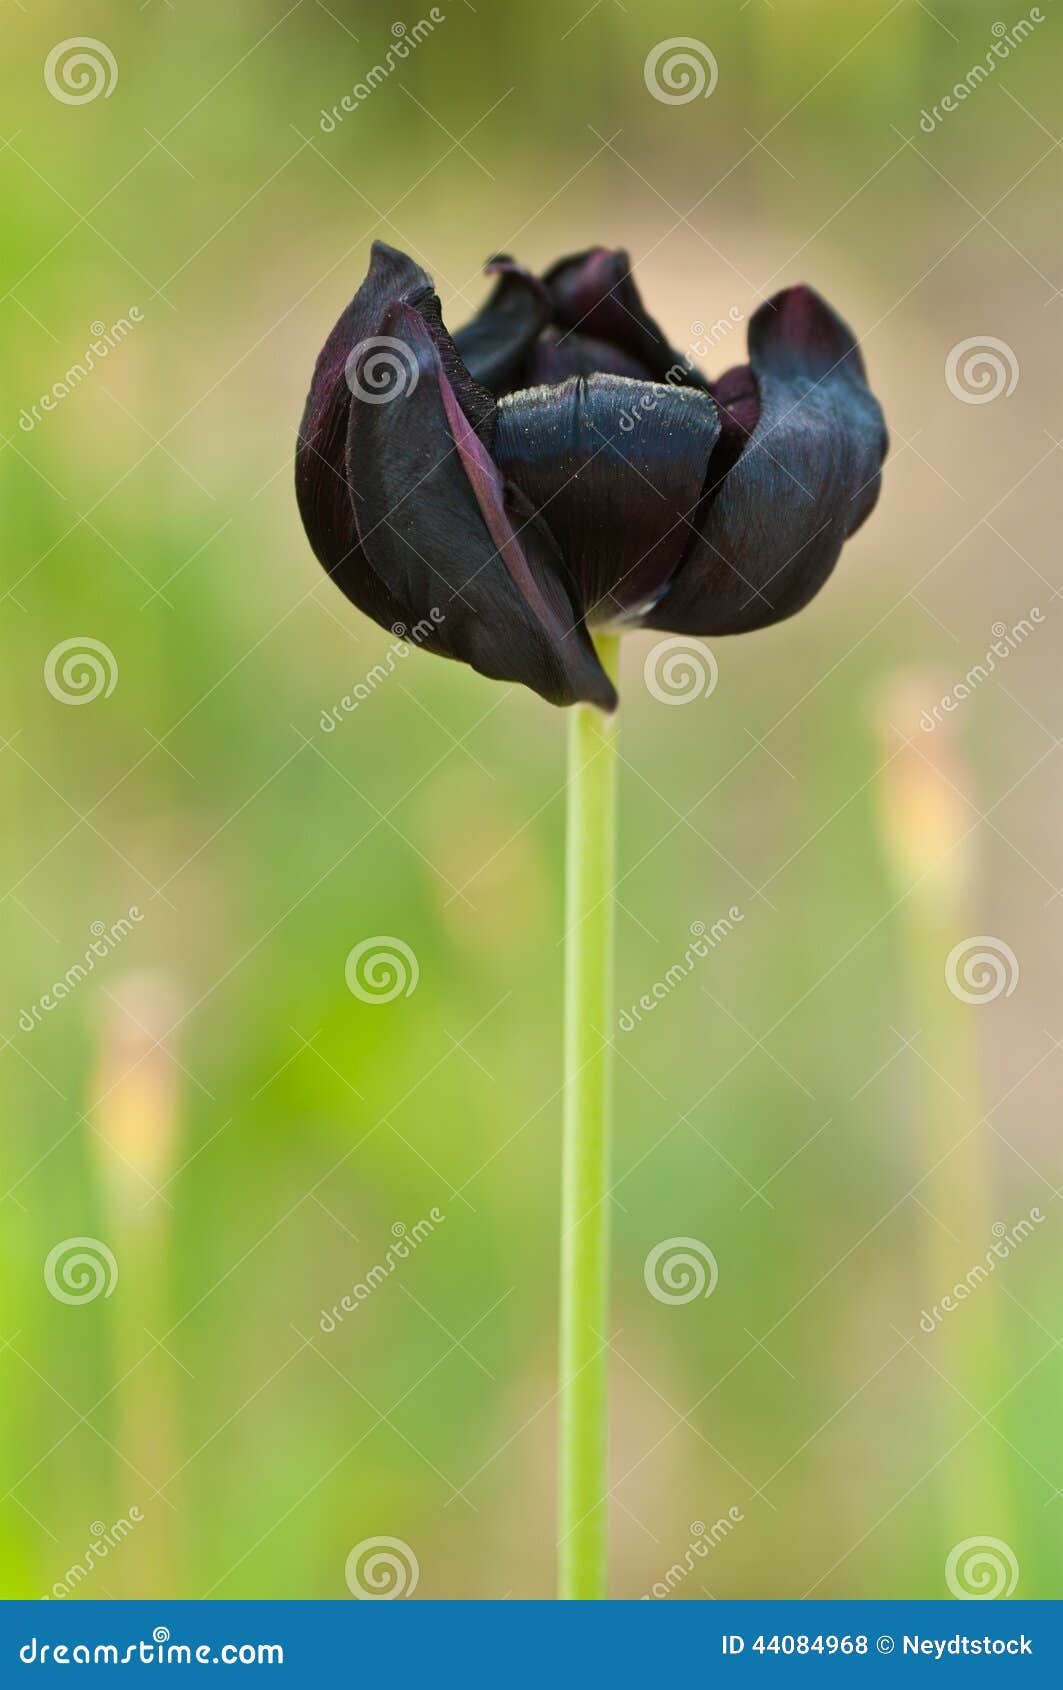 Проклятие черного тюльпана. Черный тюльпан. Черный тюльпан картинки. Темные полоски на листьях тюльпанов. Тюльпаны черные с розовой тенью.